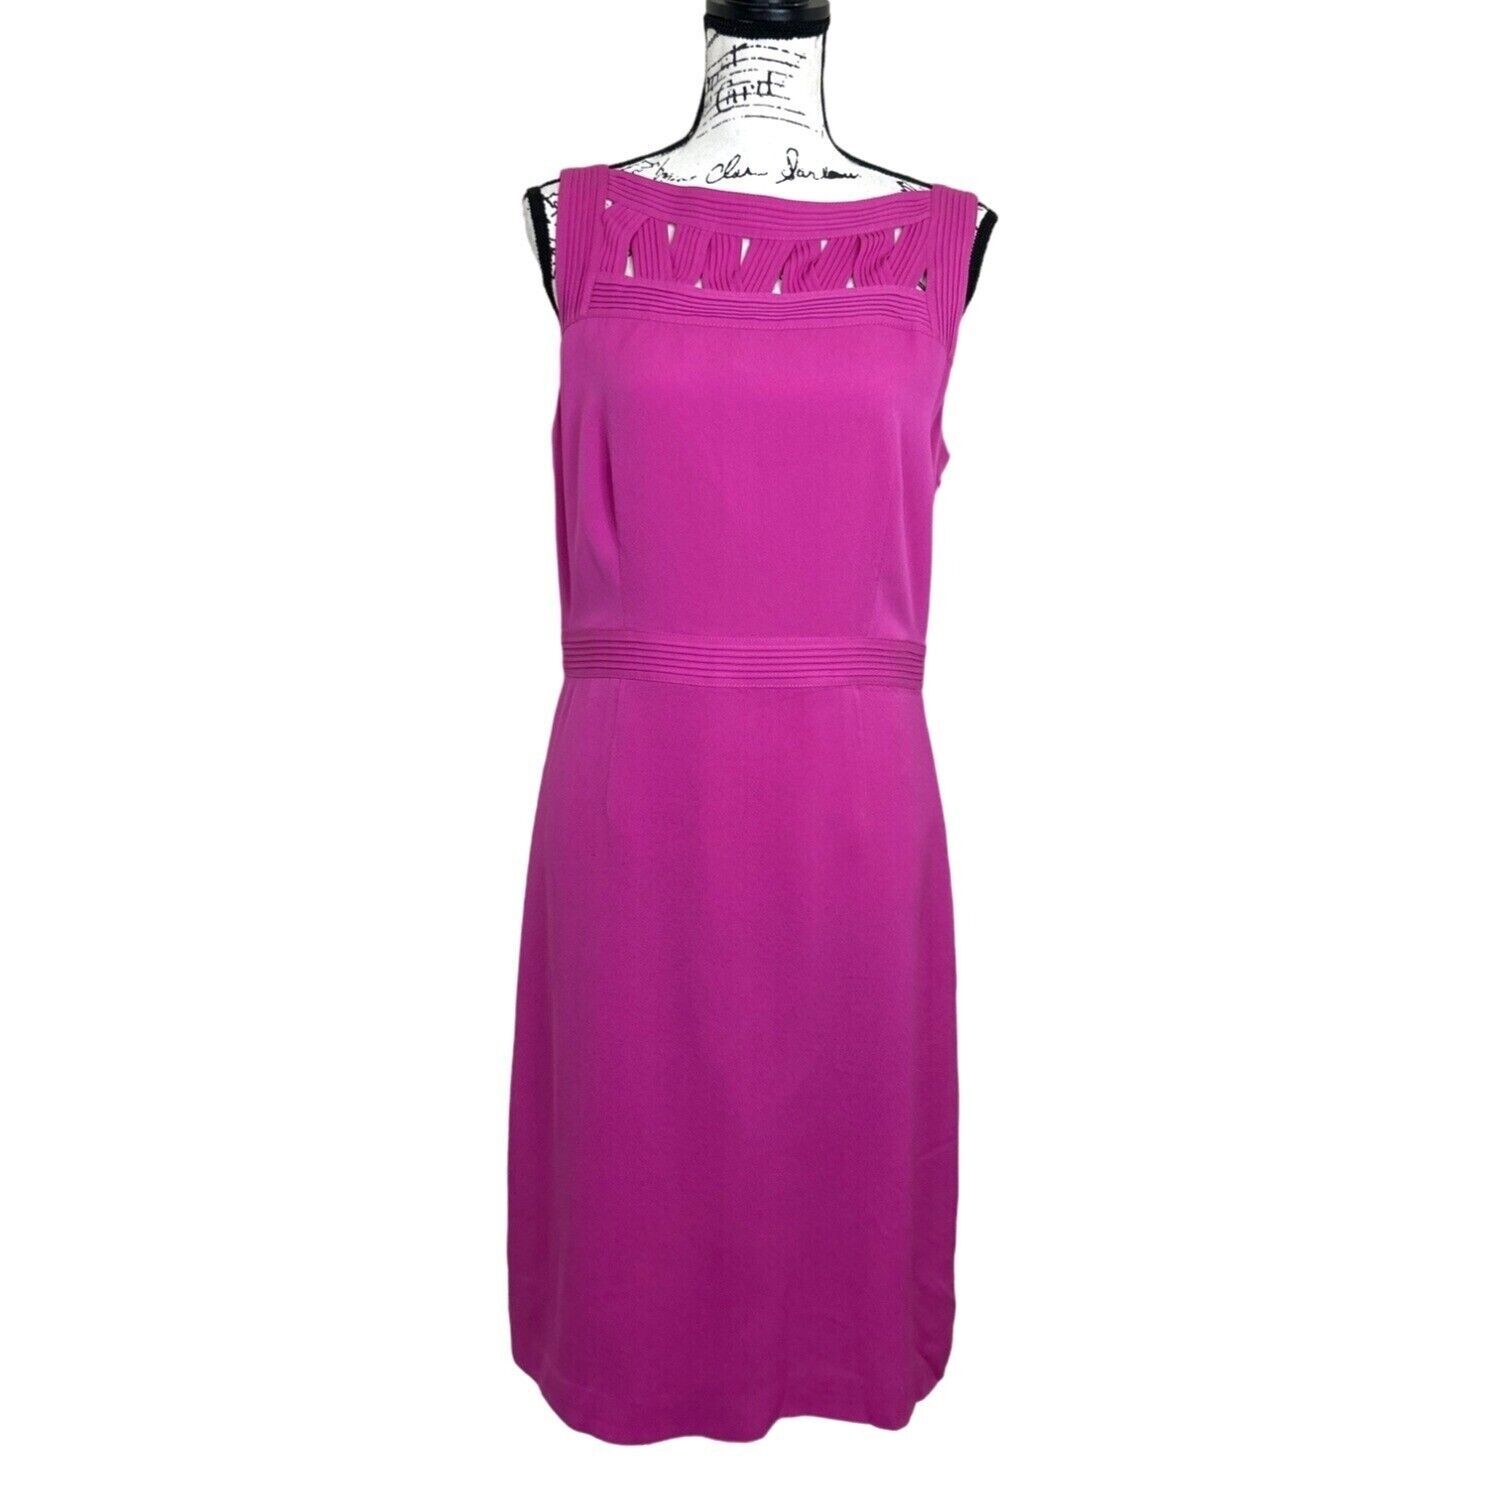 Tory Burch Women\'s Silk Dress Sleeveless Hot Pink Size 6